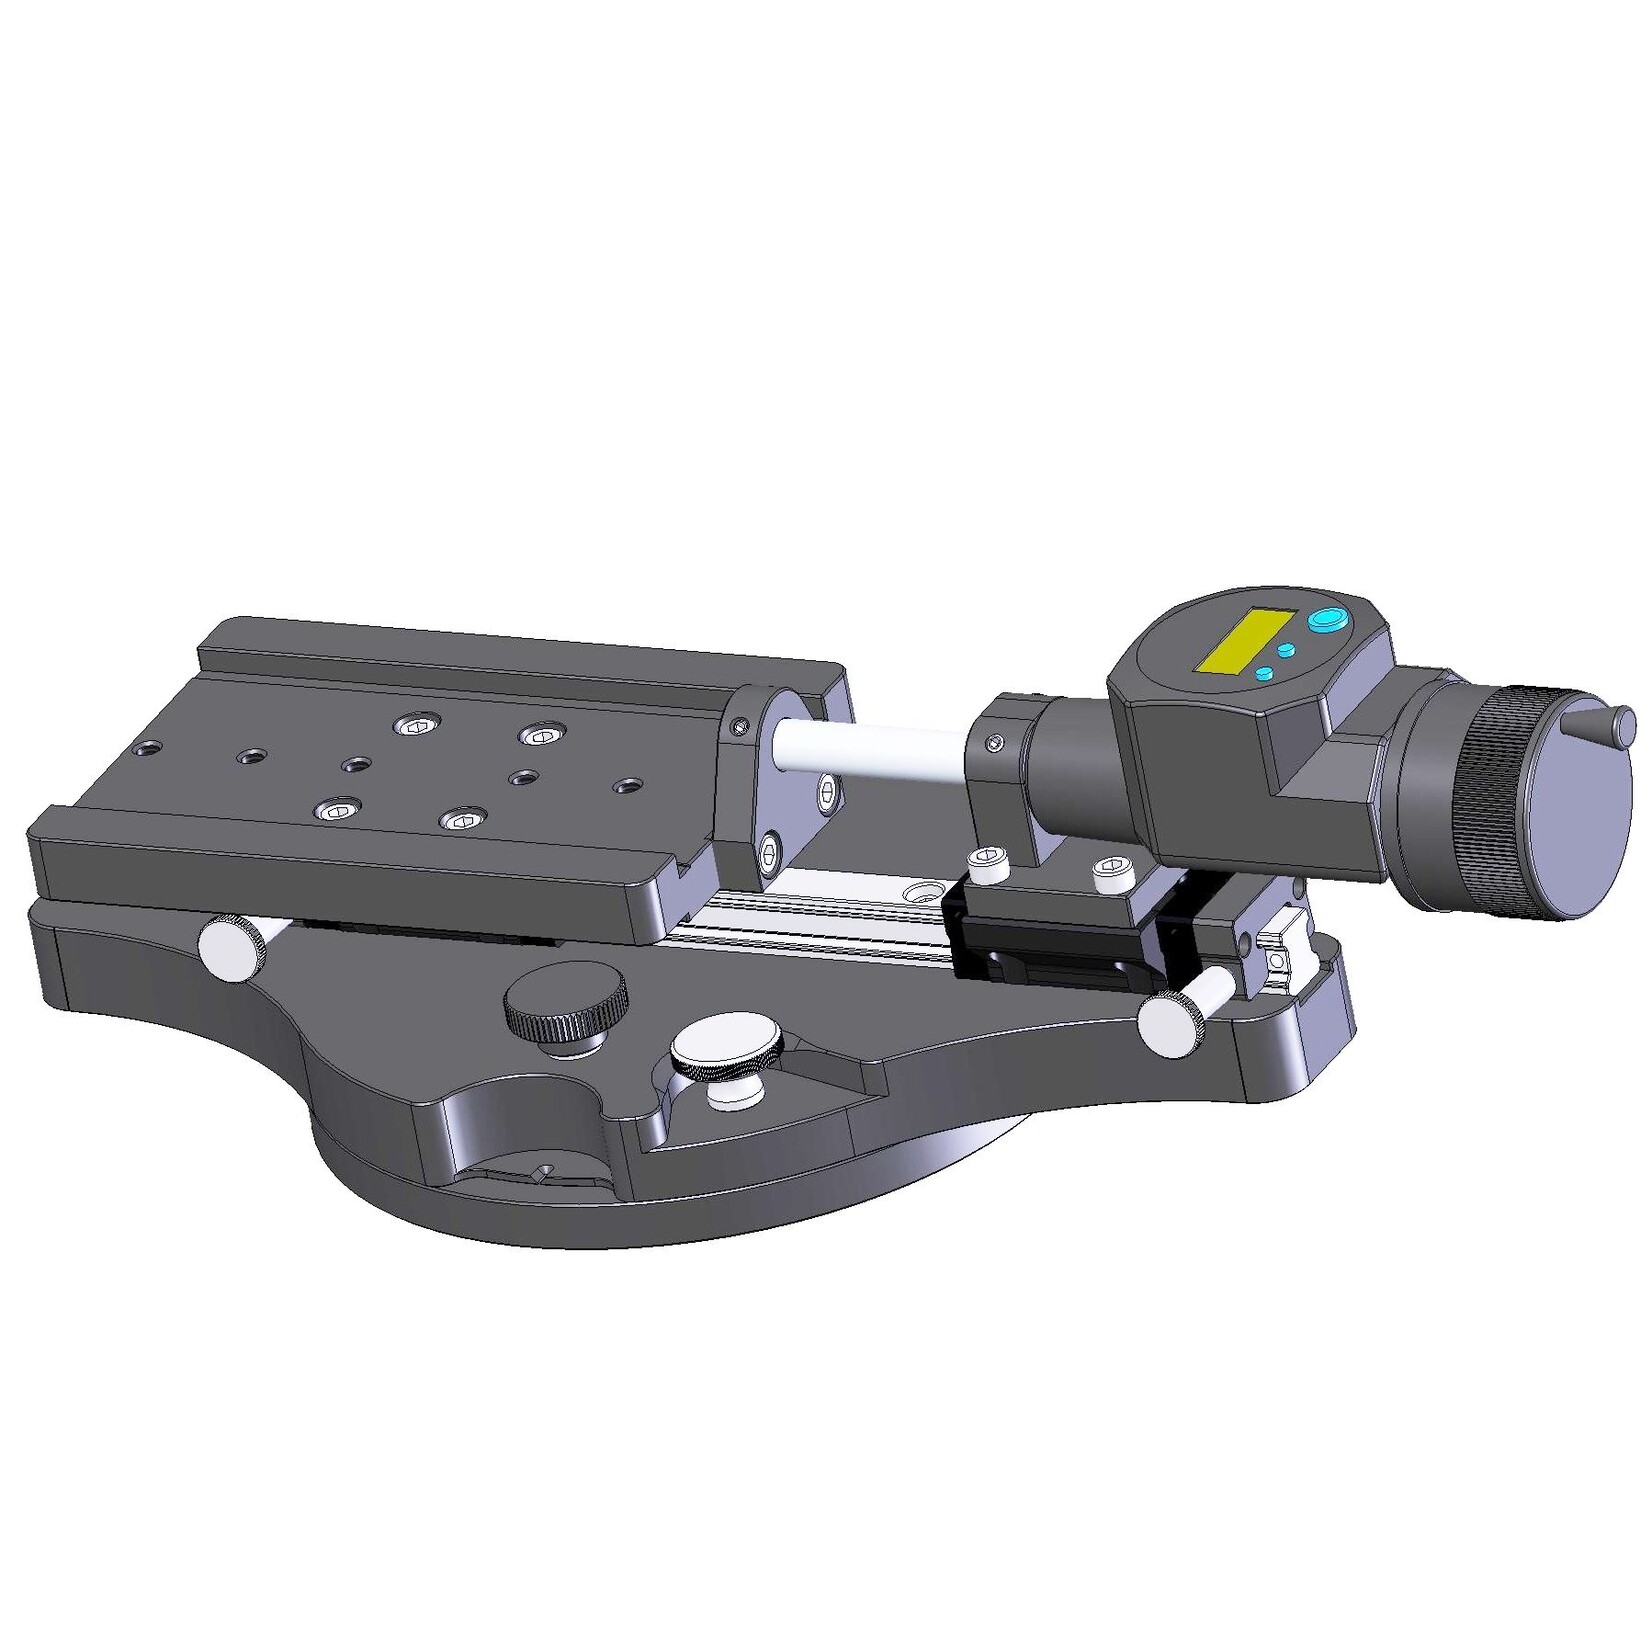 Medição de comprimento de 50 mm com resolução de 0,001 mm, ideal para utilização em microscópios